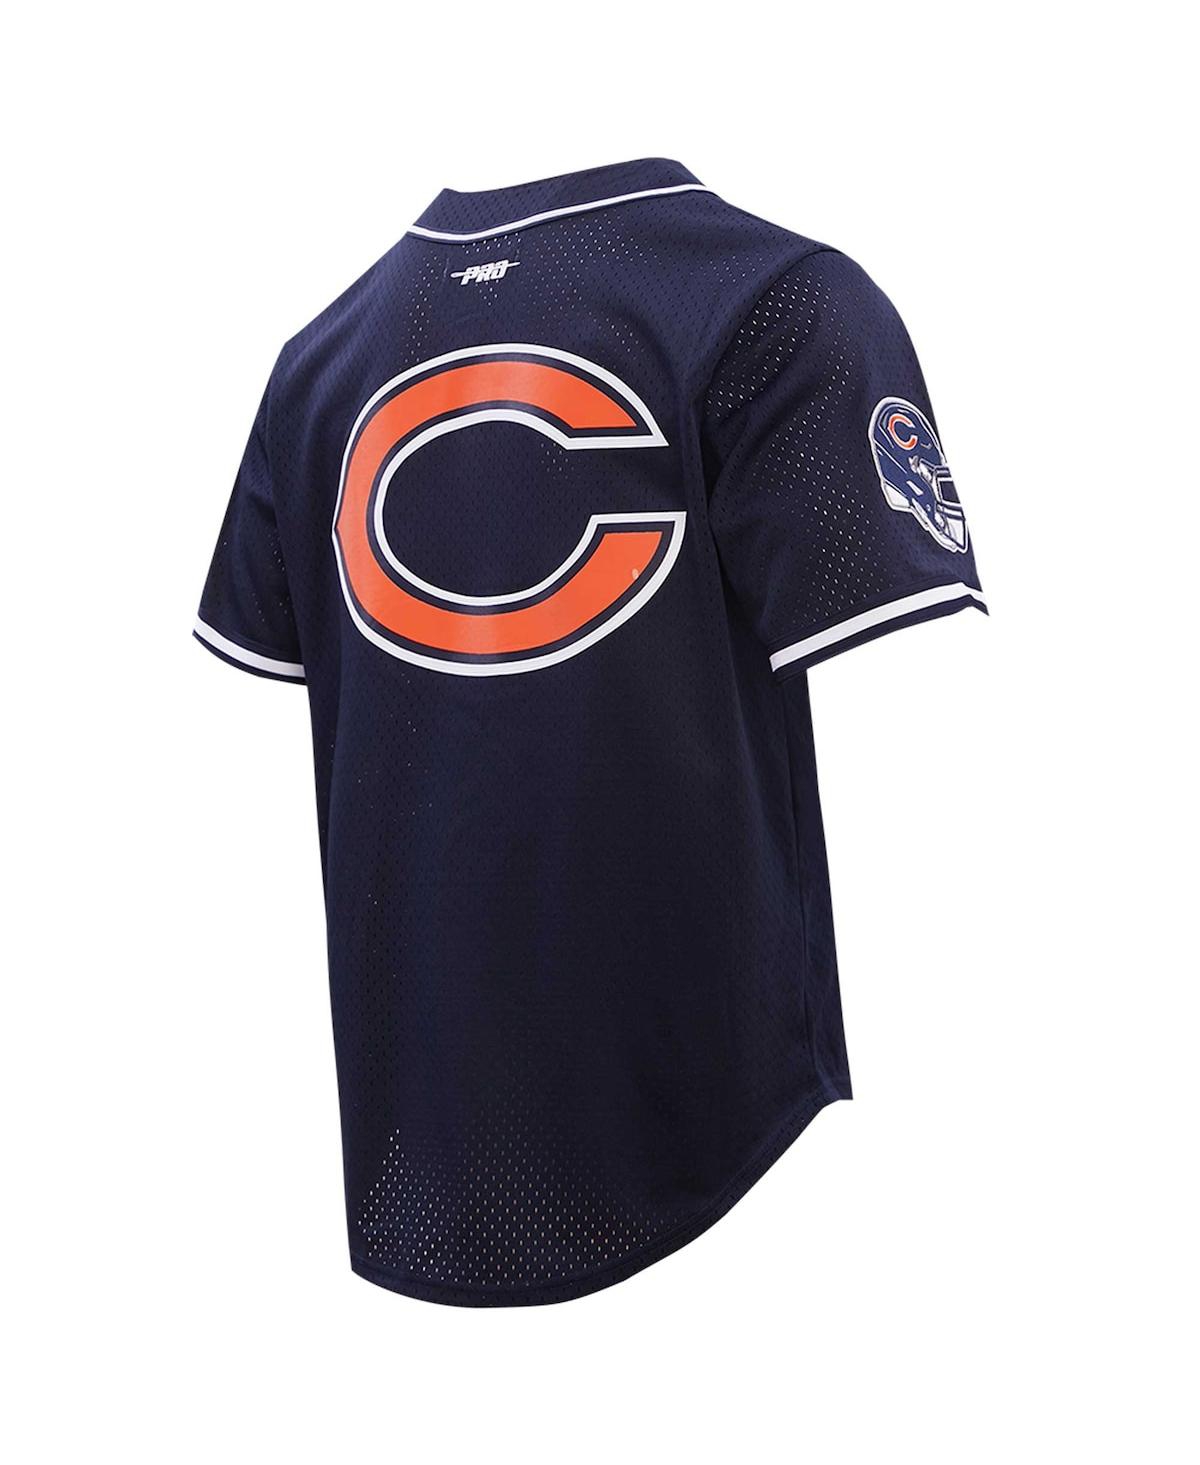 Shop Pro Standard Men's  Justin Fields Navy Chicago Bears Baseball Player Button-up Shirt